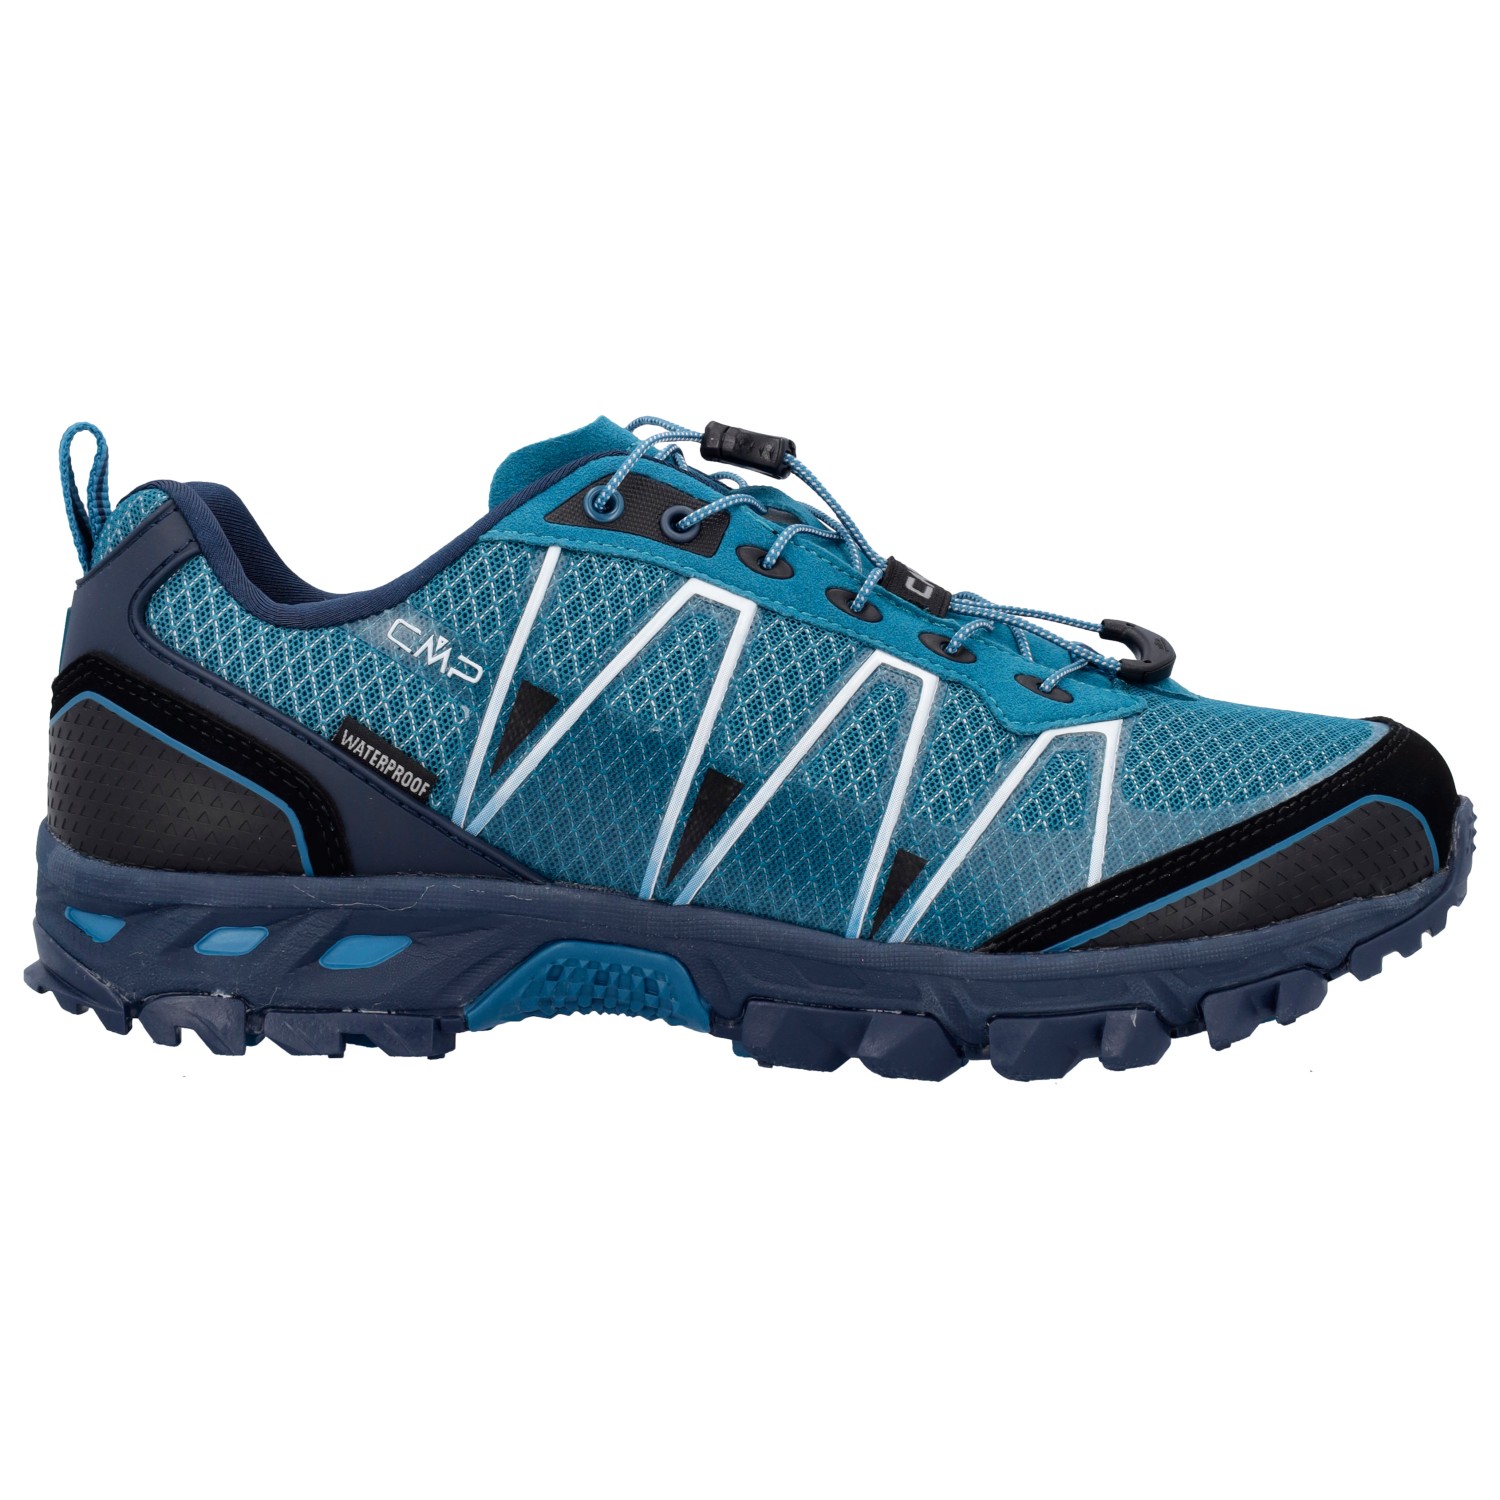 Мультиспортивная обувь Cmp Altak Trail Shoes Waterproof, цвет Petrol цена и фото